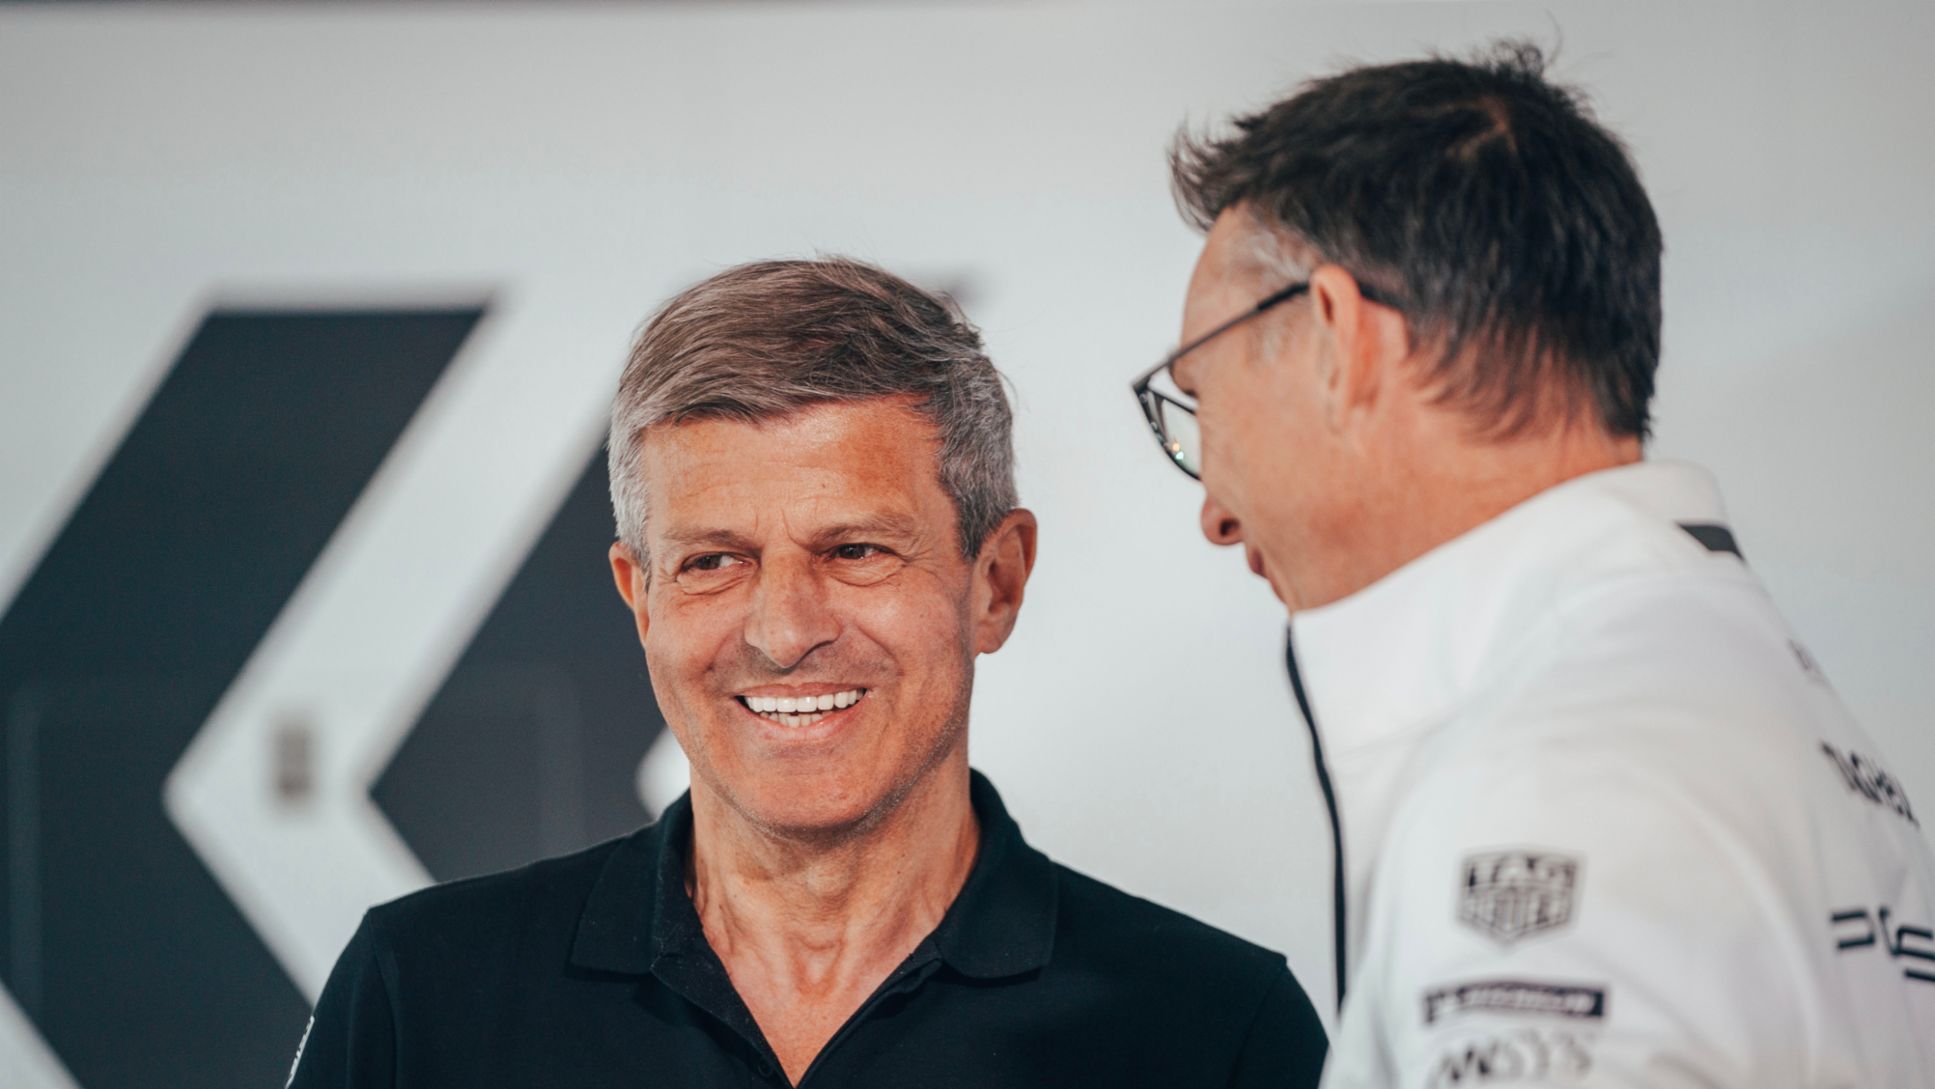 Fritz Enzinger, Leiter Porsche Motorsport, Amiel Lindesay, Einsatzleiter Formel E, l-r, 2021, Porsche AG